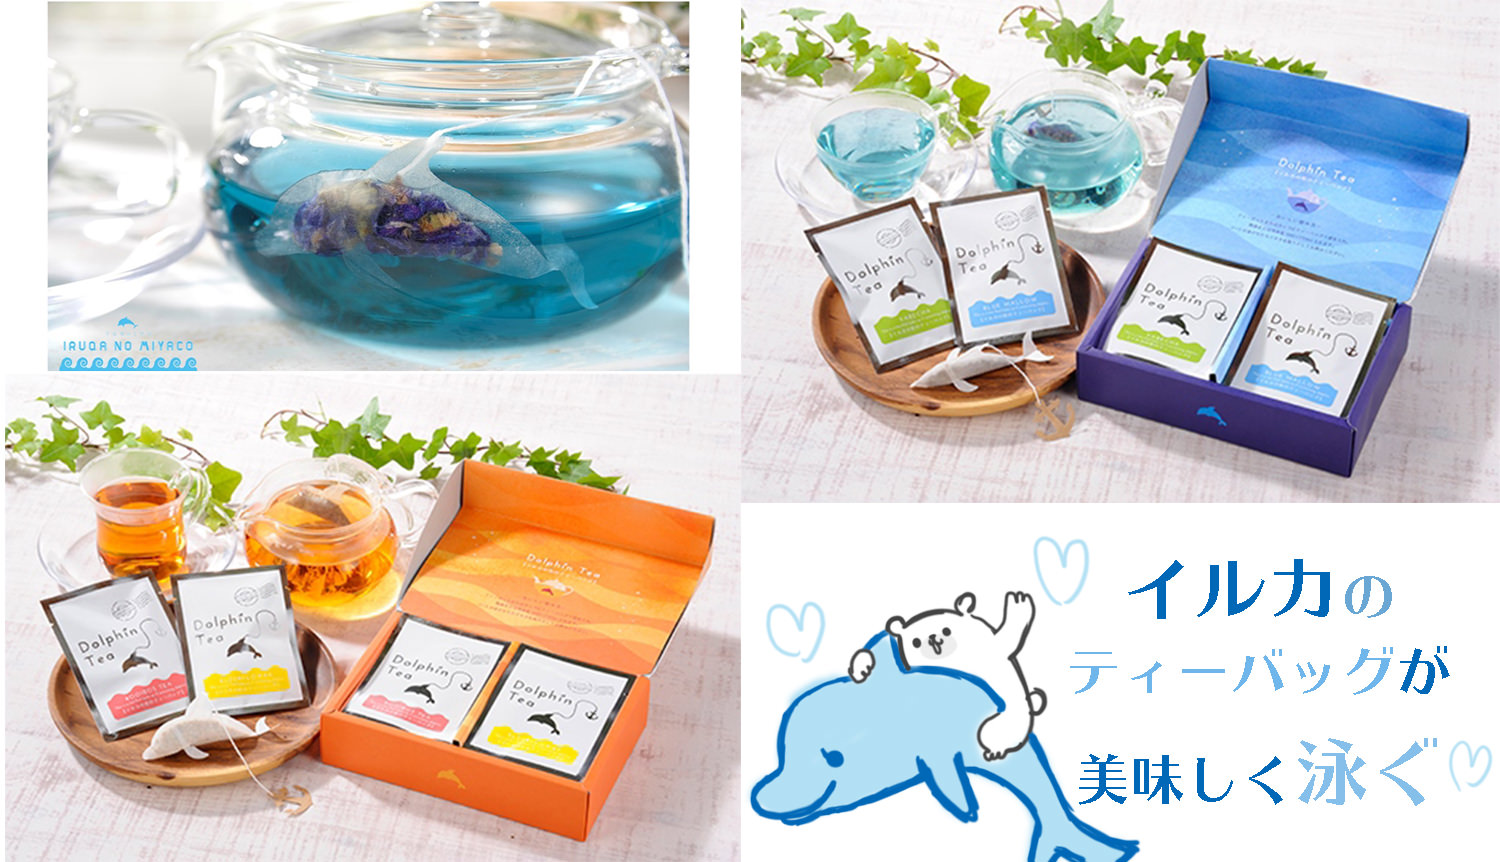 ティーポットを泳ぐイルカの形のティーバッグ！プレゼントにも良さそうな熊本出身・松下園の「イルカのティーバッグ」